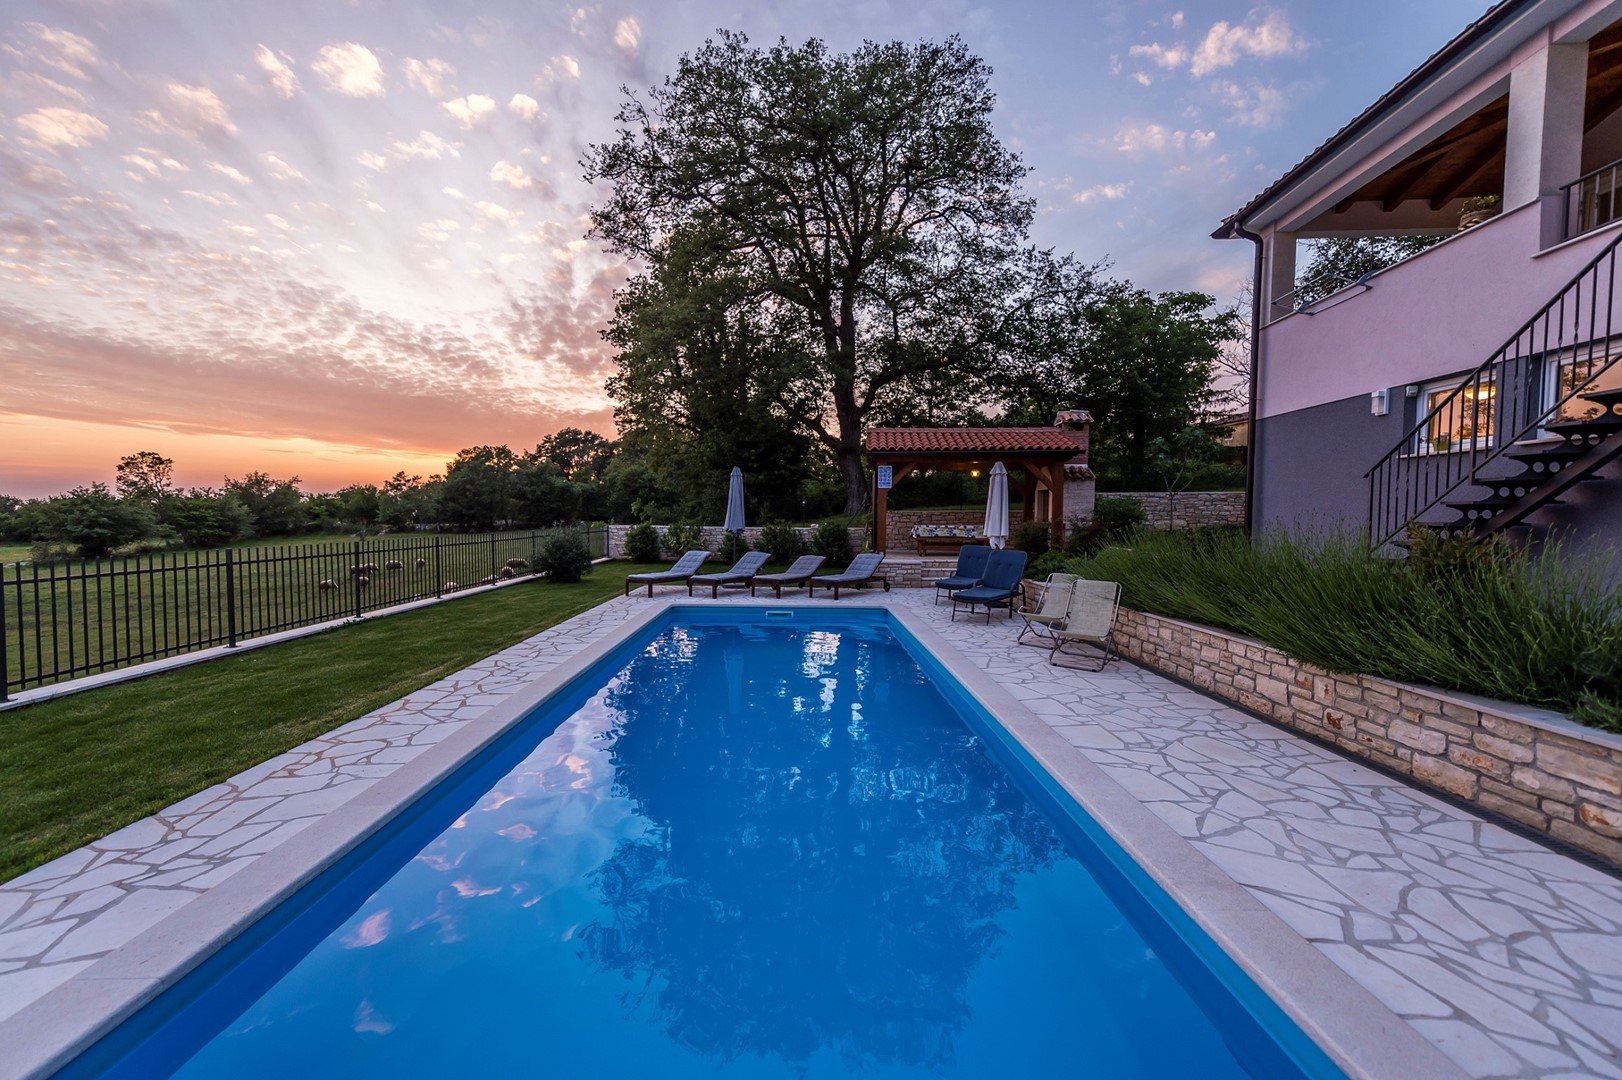 Ferienhaus Vesna mit Pool  in Istrien